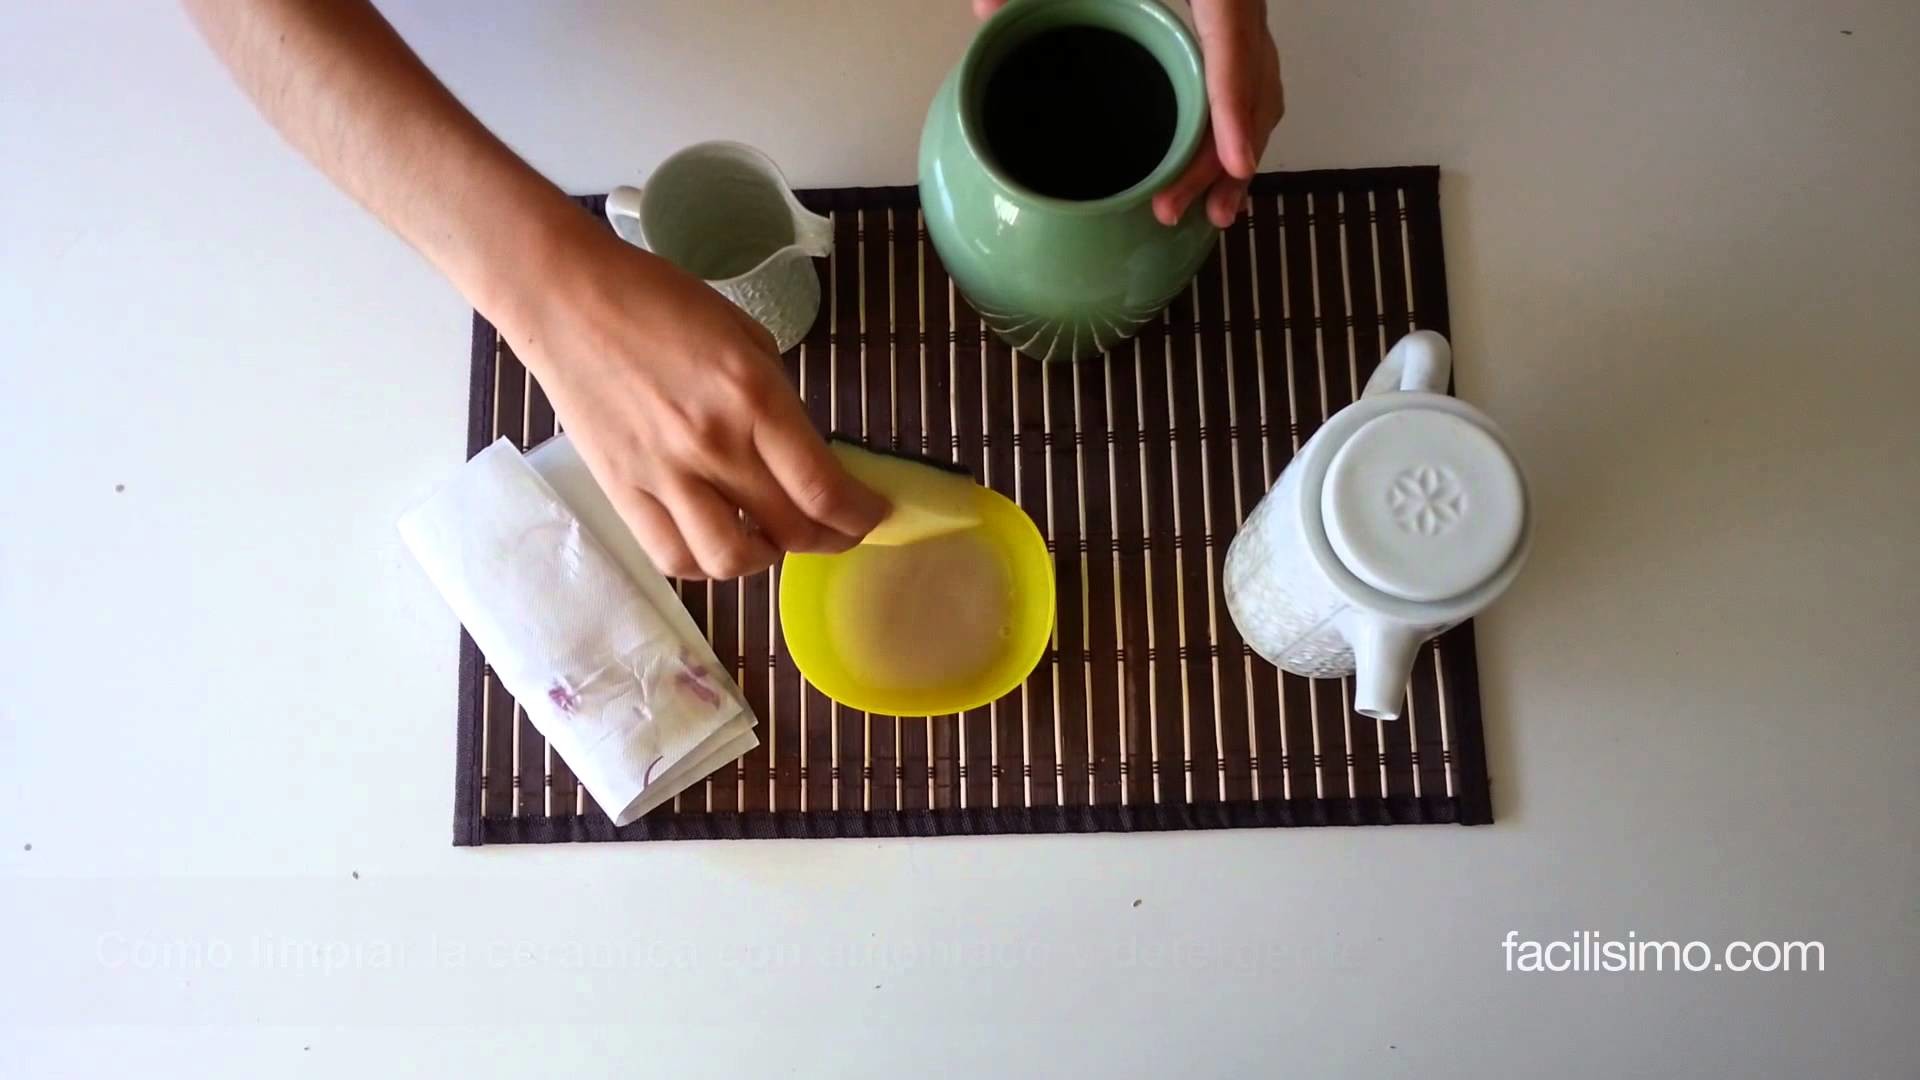 Cómo limpiar la cerámica con amoniaco y detergente | facilisimo.com